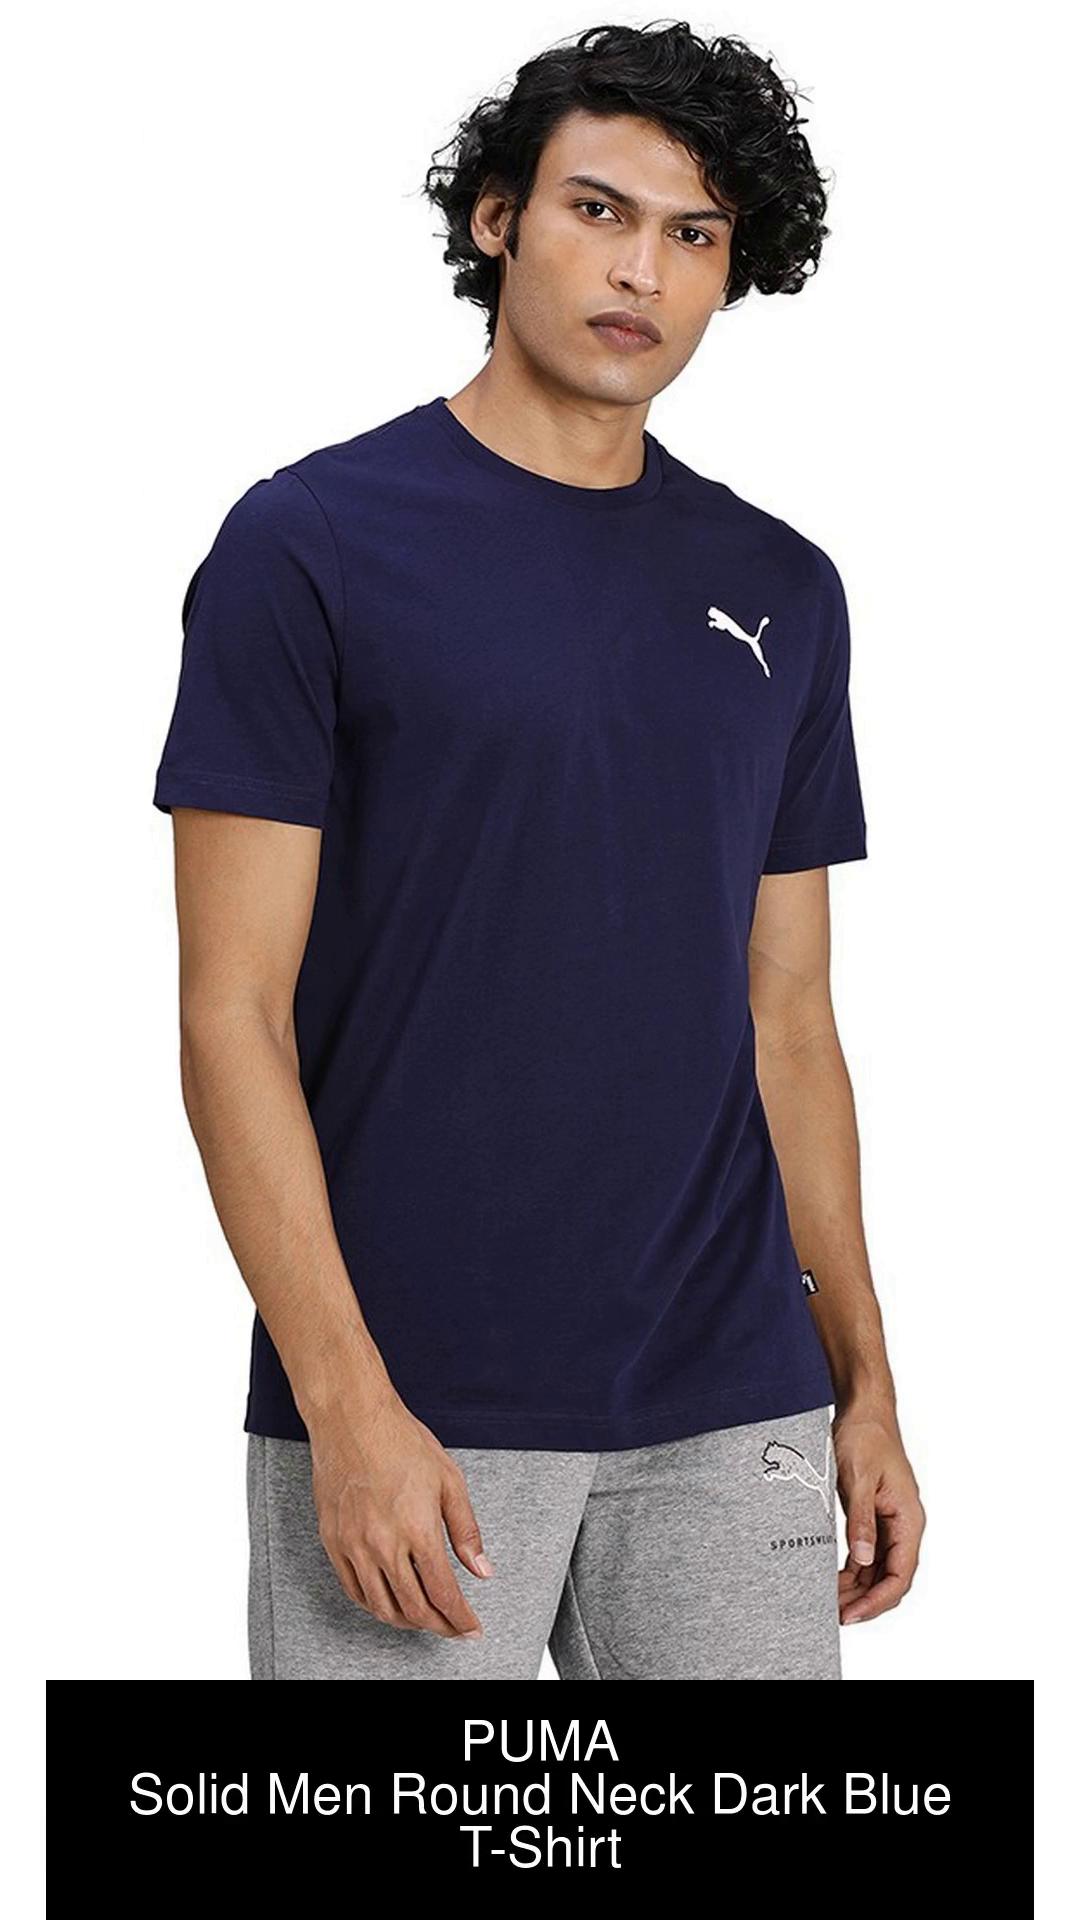 PUMA Solid Men Round Neck Dark Blue T-Shirt - Buy PUMA Solid Men Round Neck  Dark Blue T-Shirt Online at Best Prices in India